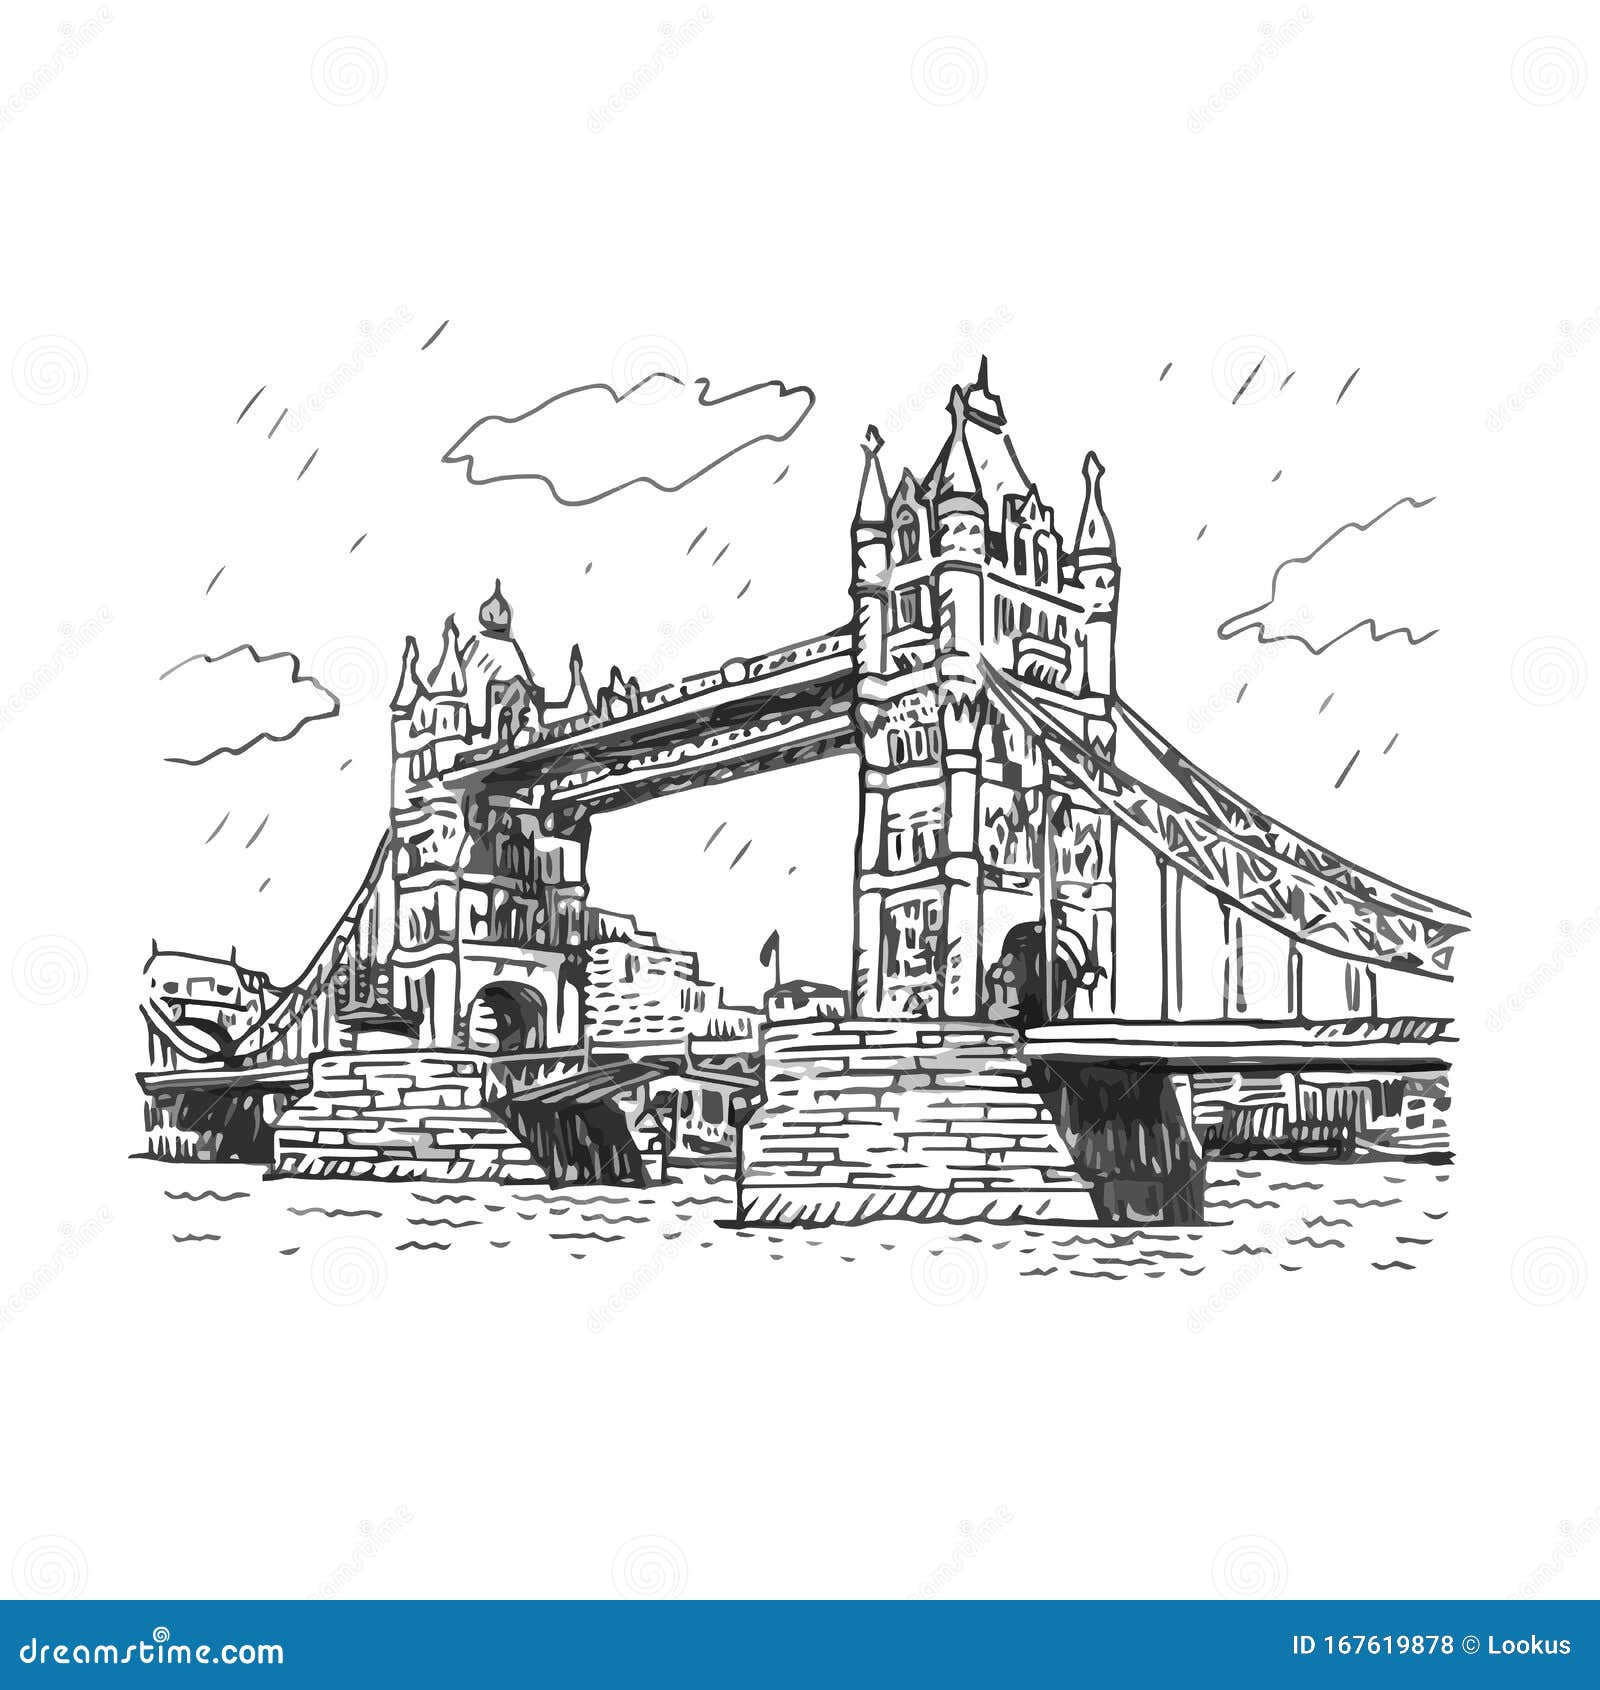 Tower Bridge London Pencil Sketch 2 Canvas Print by Fusion Designs - Fy